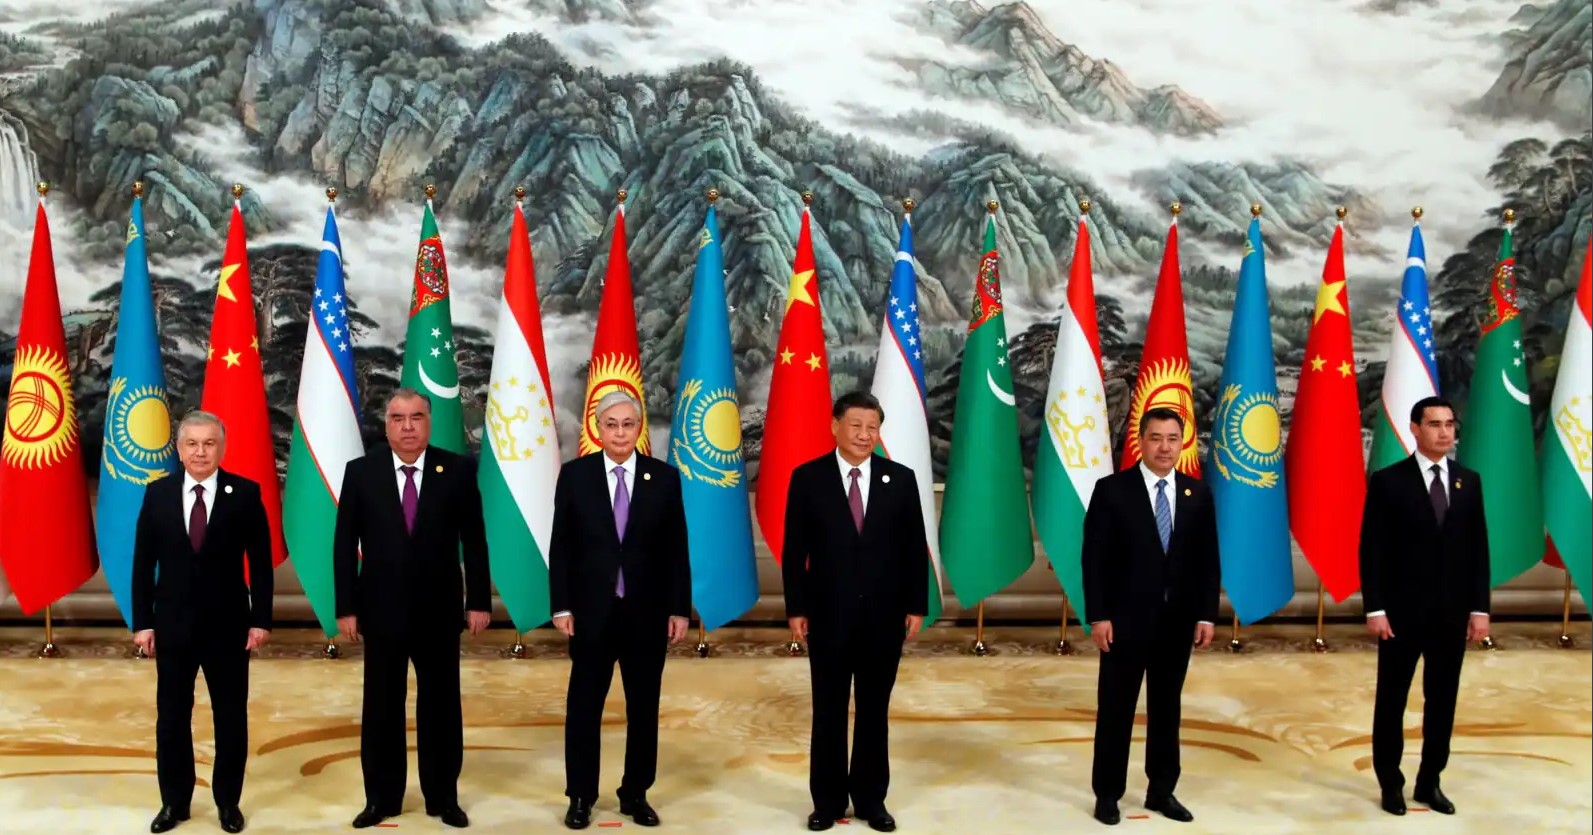  Глава Китая Си Цзиньпин (в центре) и президенты стран Центральной Азии в Сиане. Фото: reuters.com